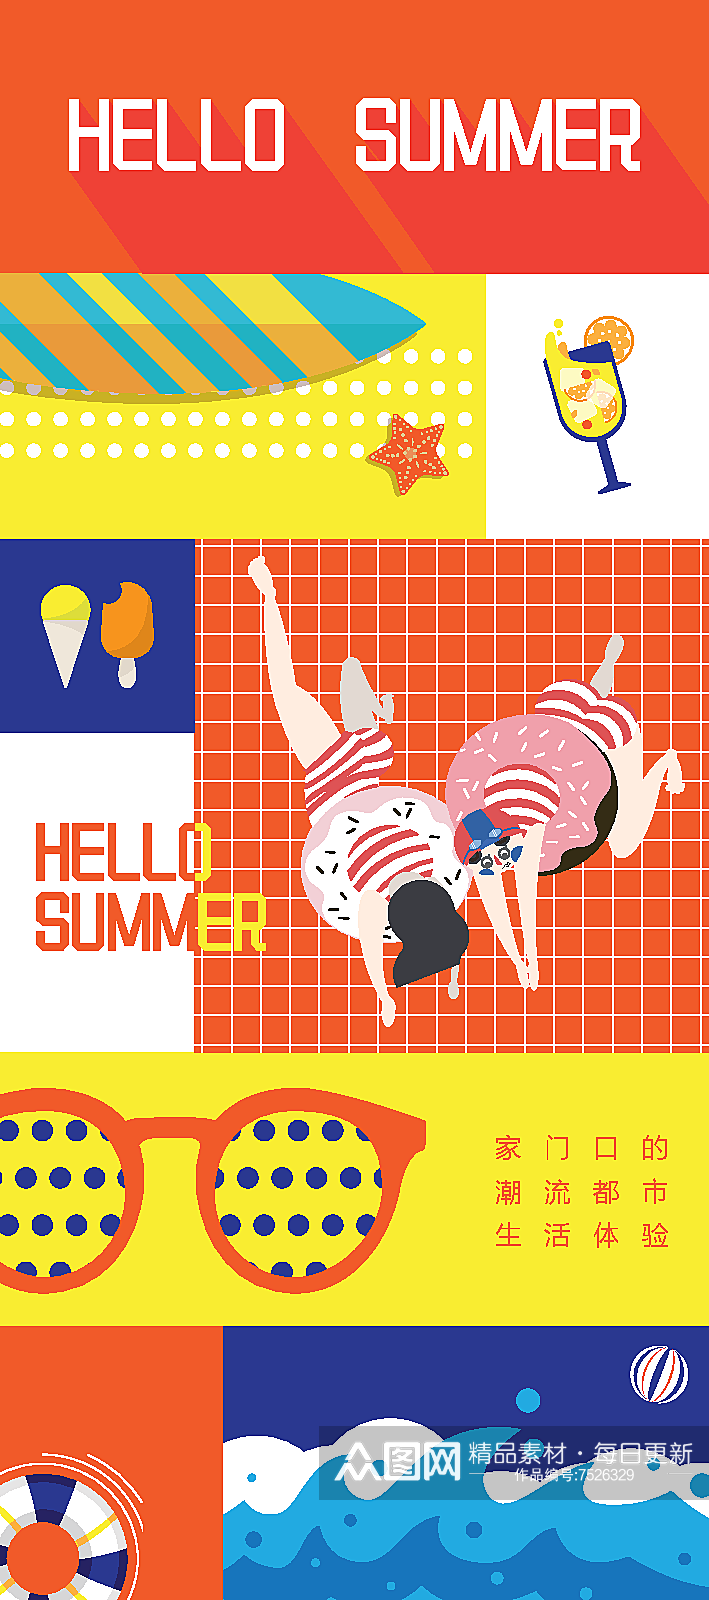 彩色创意夏季派对海报设计素材